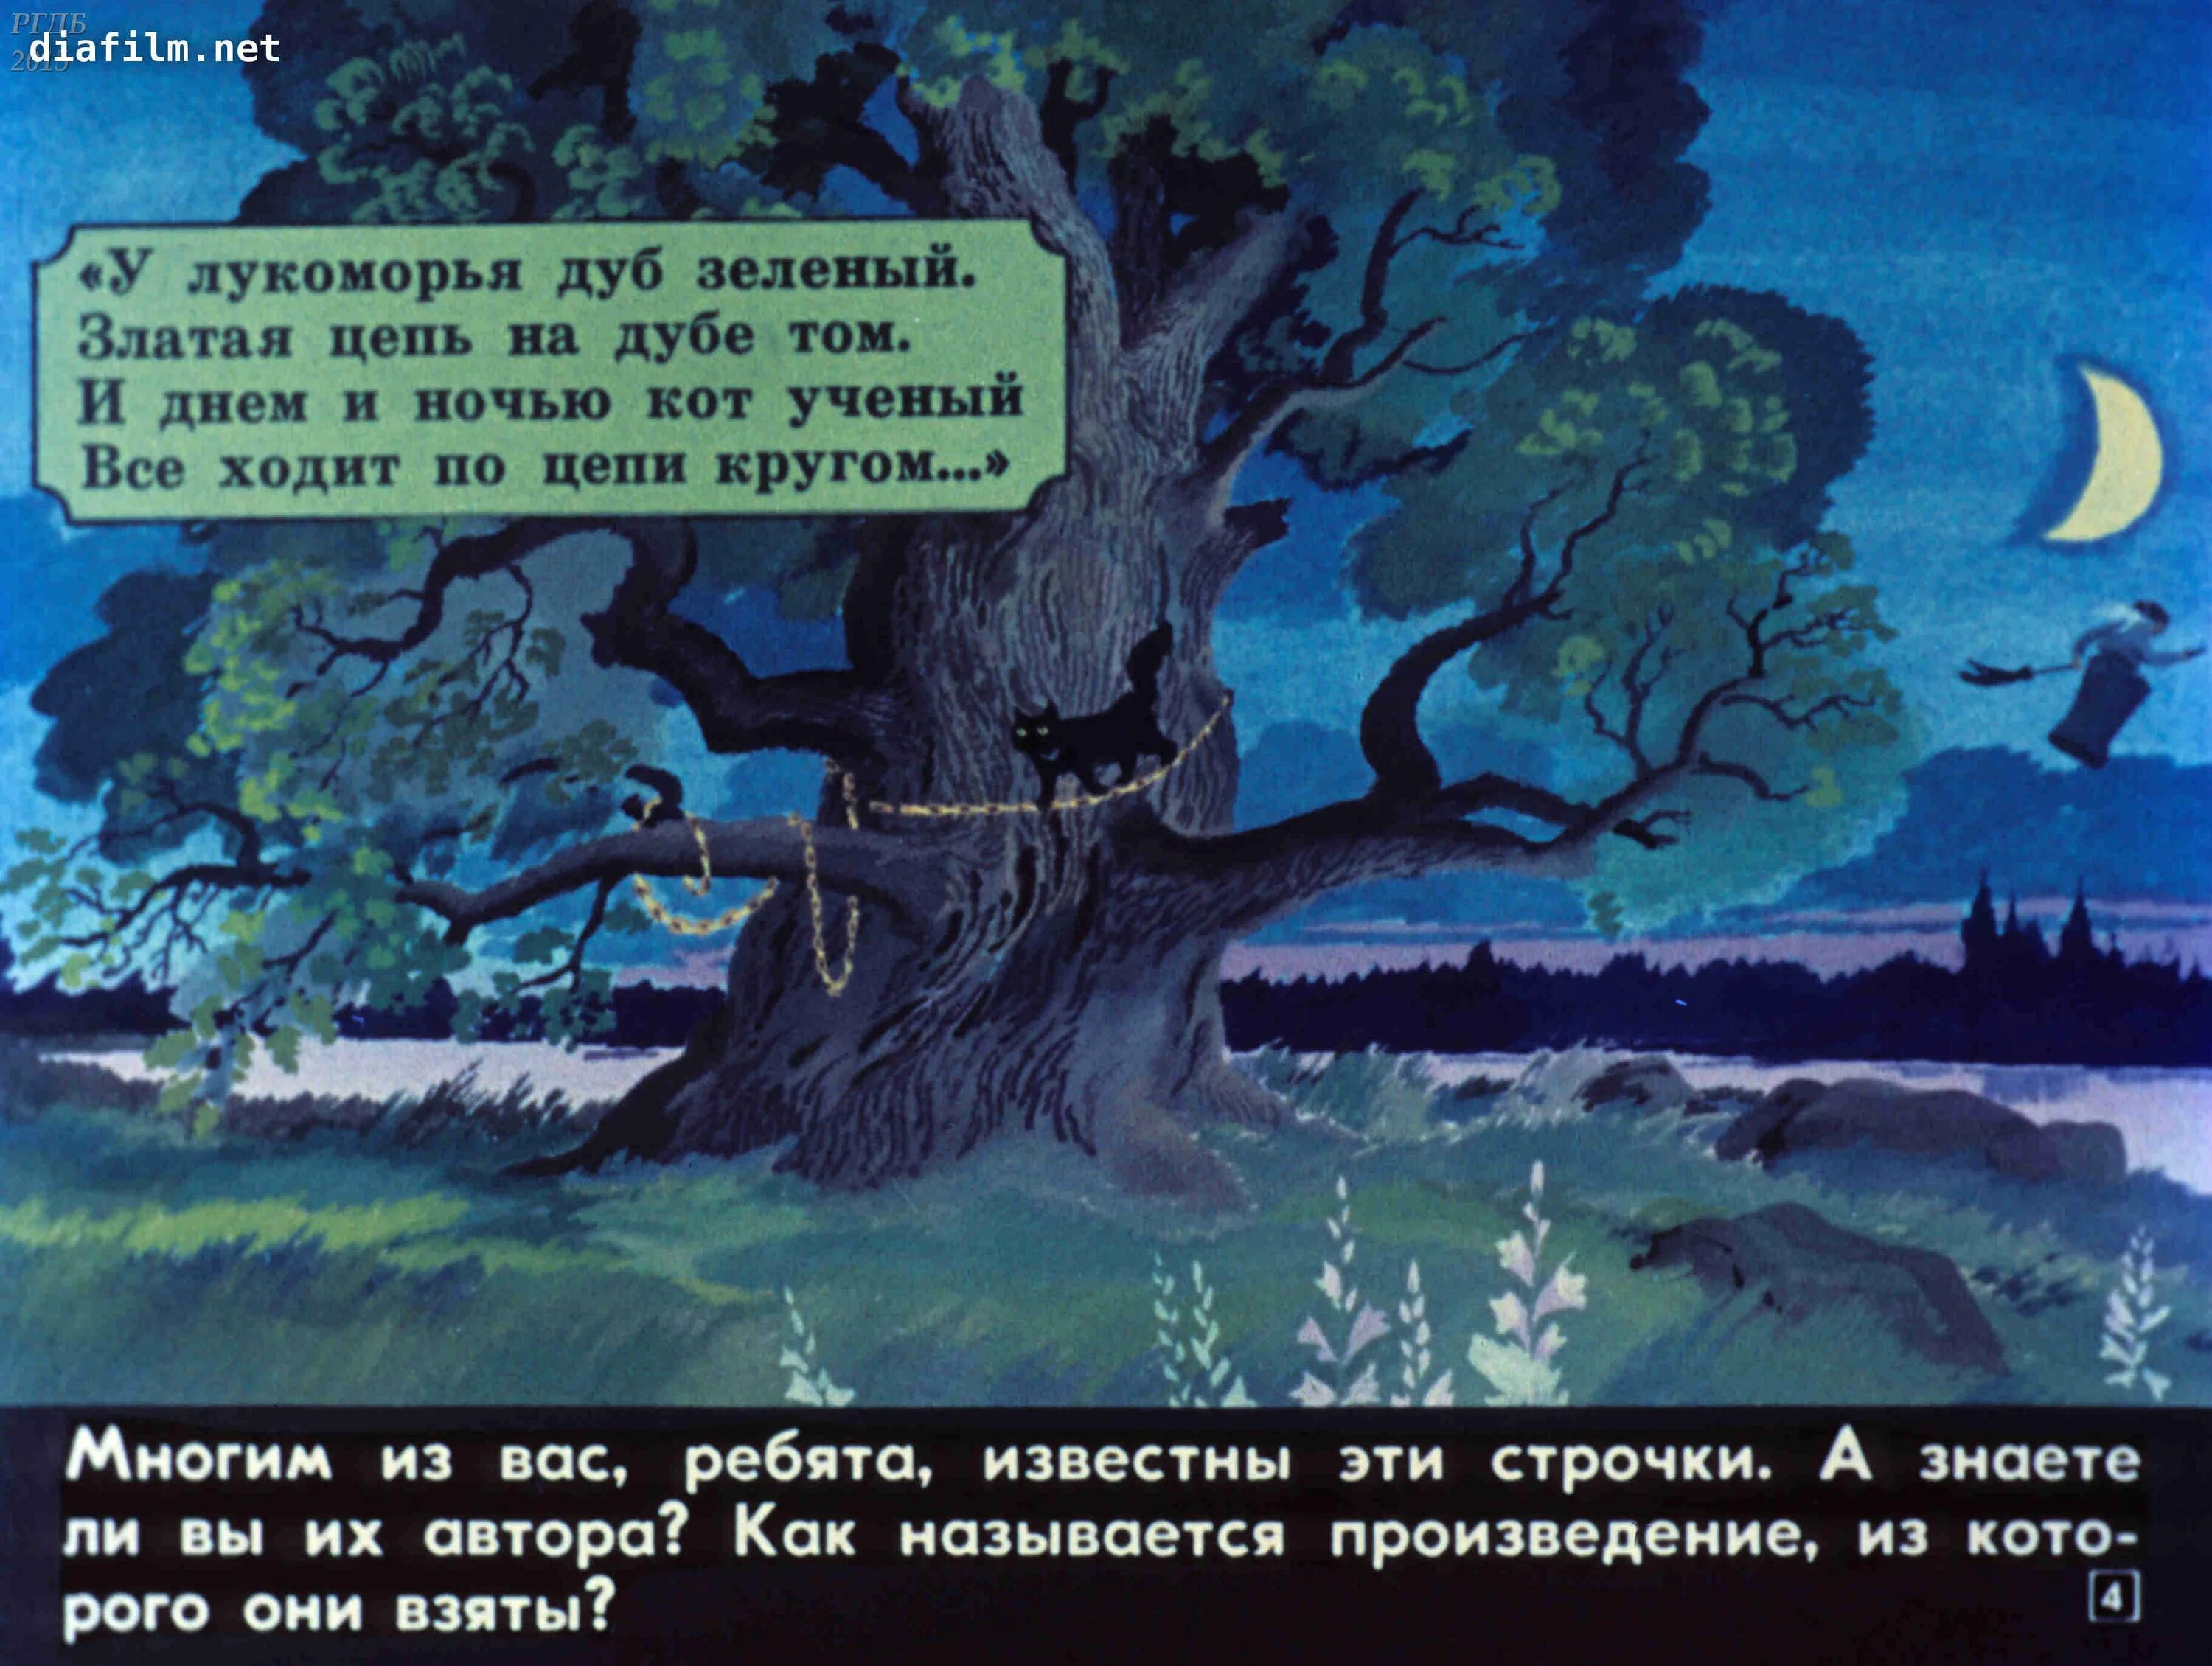 Пушкин а.с. "у Лукоморья дуб зеленый...". Дуб зелёный златая цепь. Диафильм Лукоморье. Златая цепь на дубе.